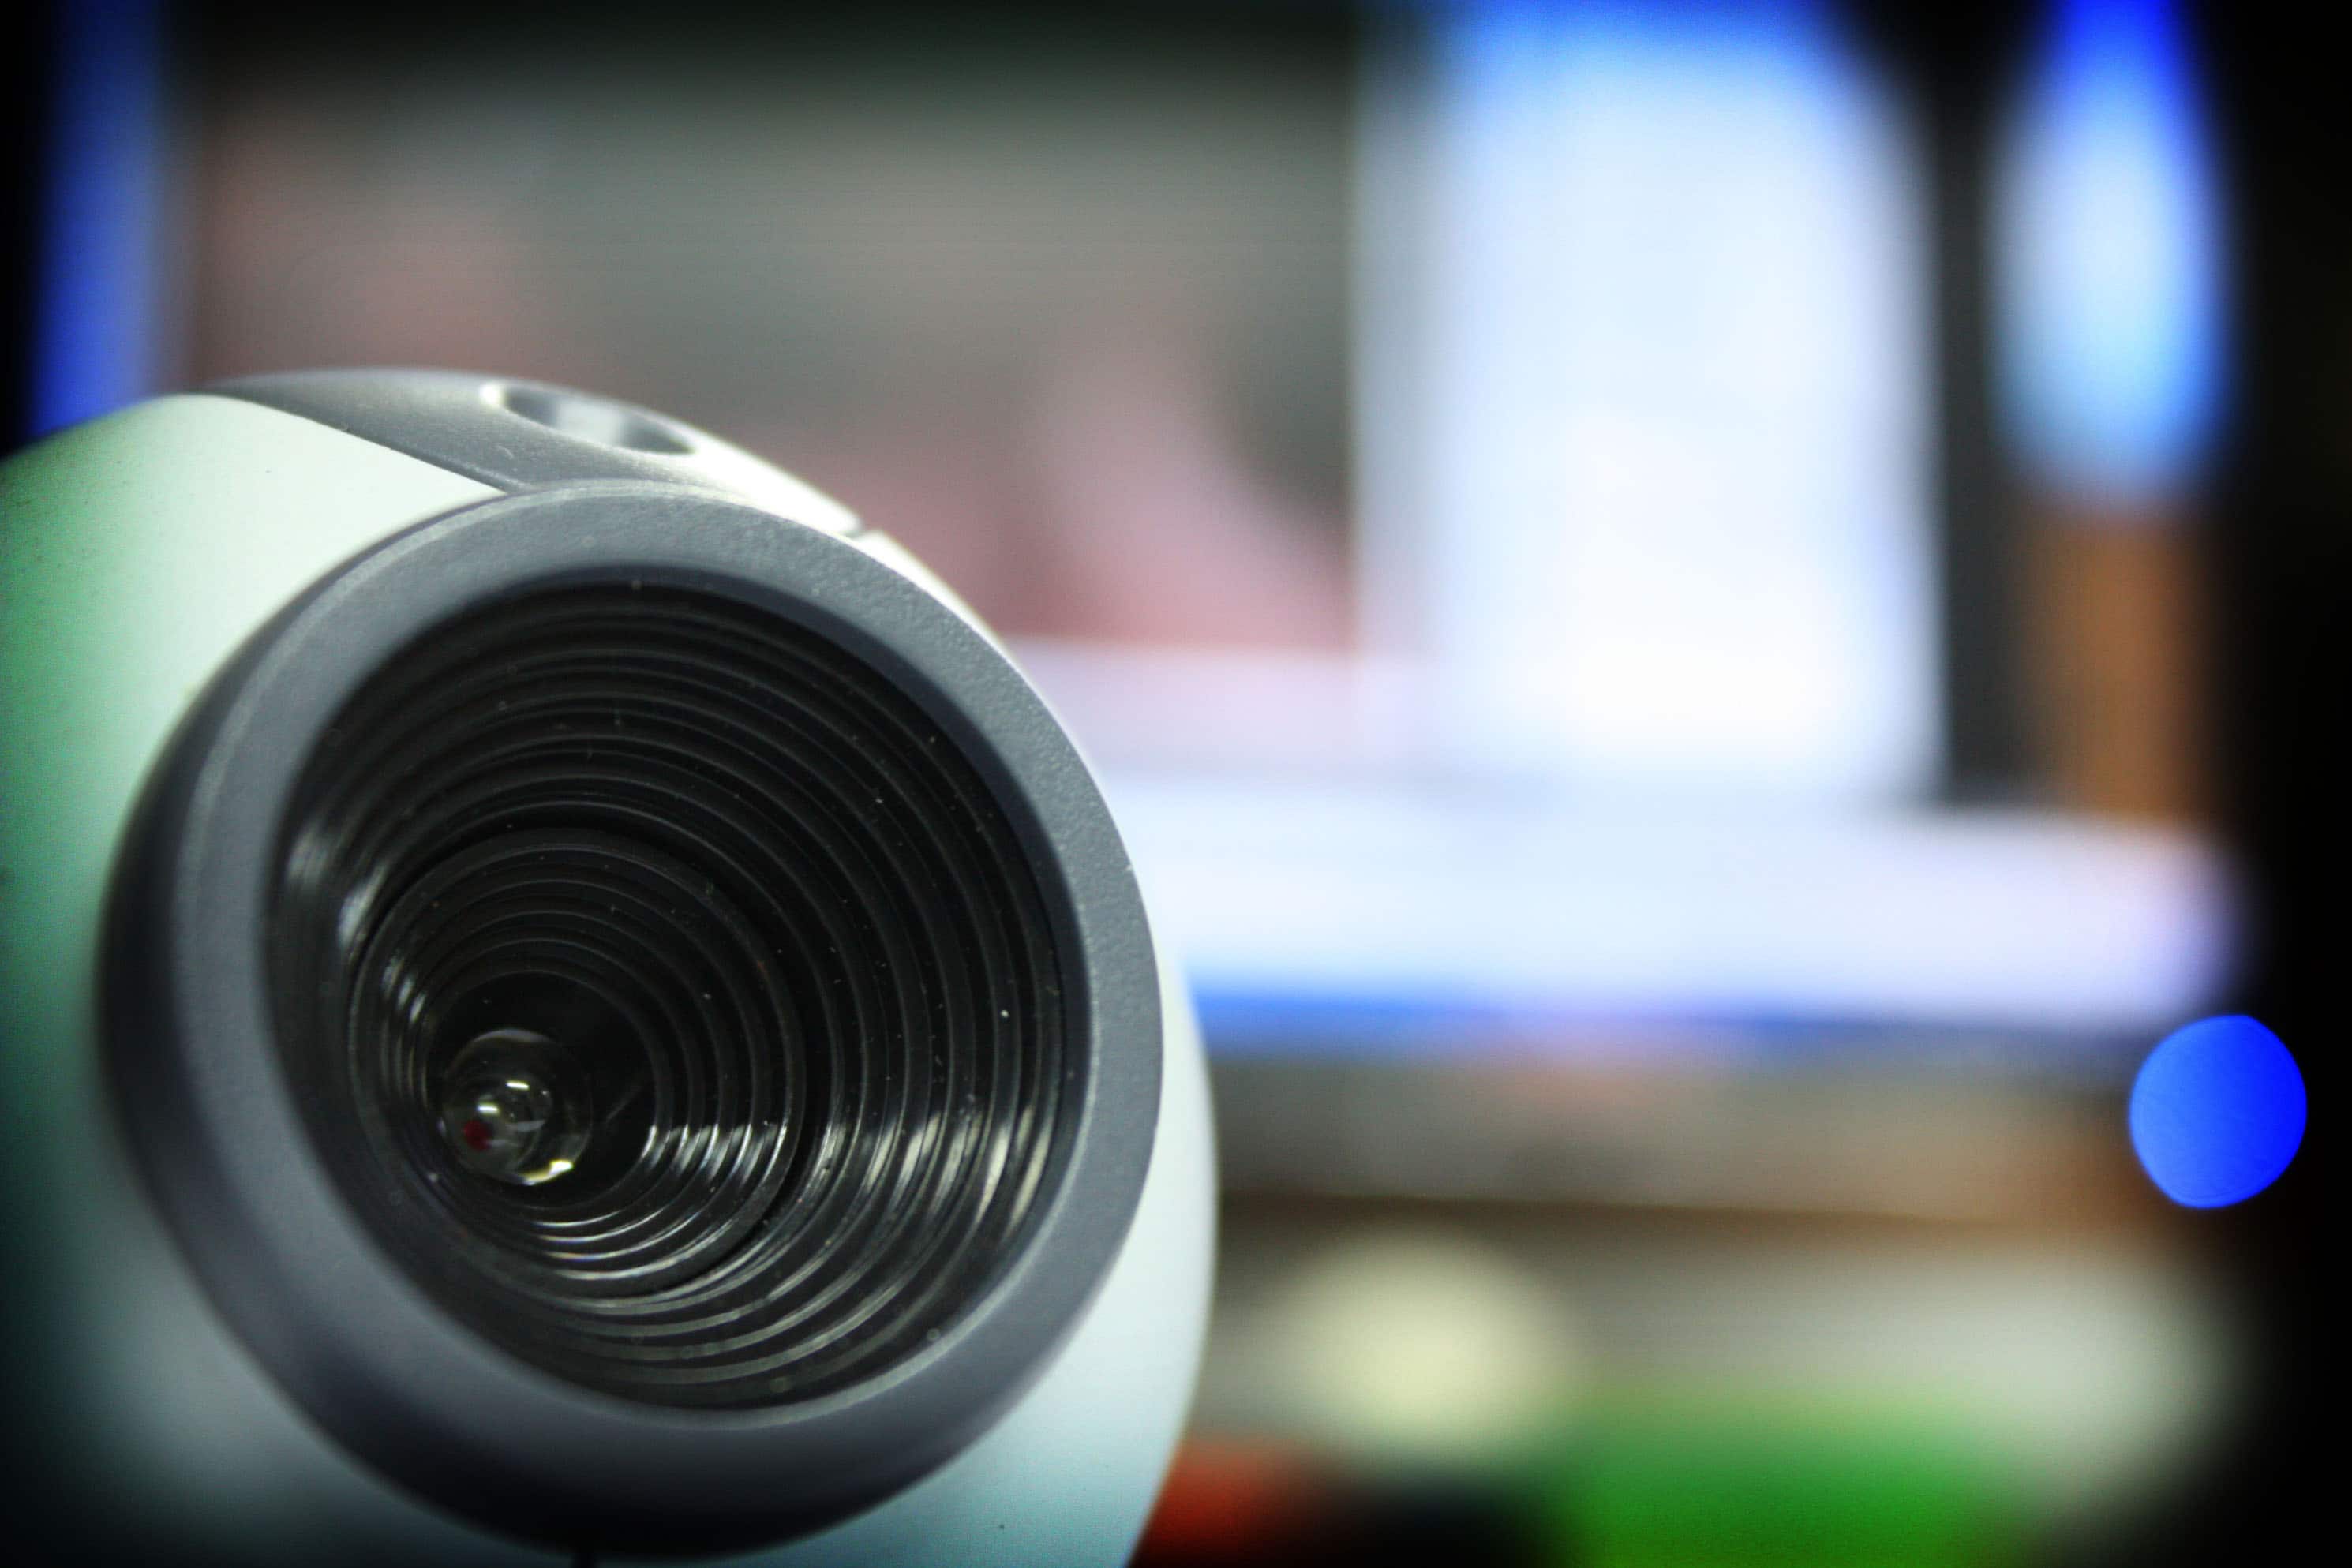 How To Set Up A Webcam As A Security Camera